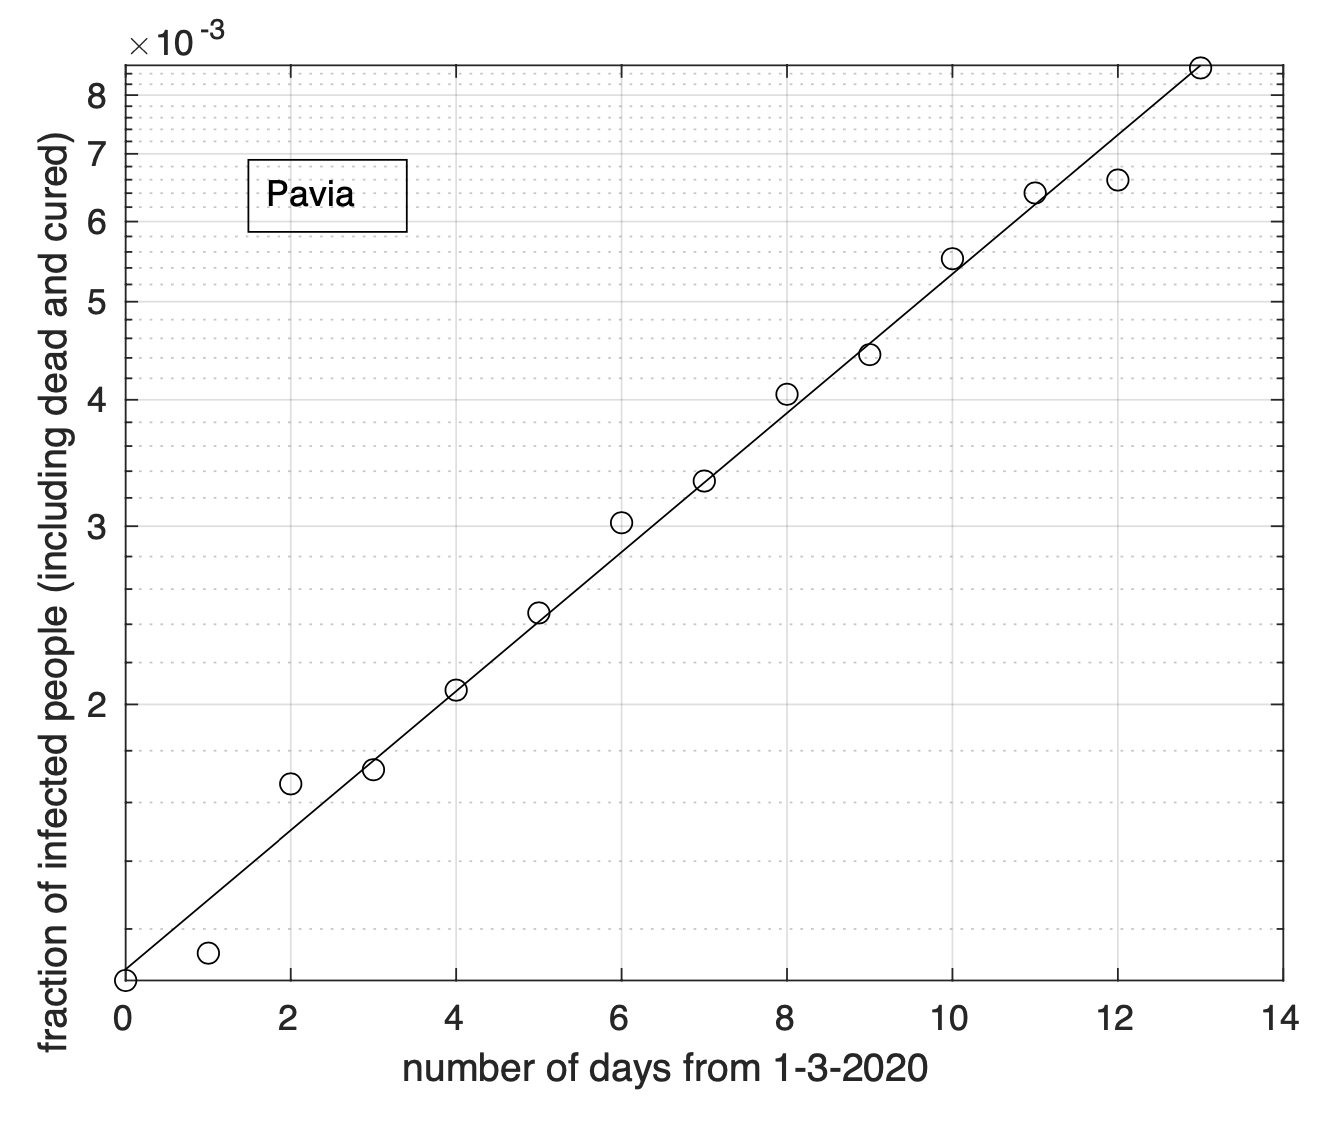 Sequenza della frazione dei contagiati osservati nella provincia di Pavia rispetto alla popolazione della provincia (in scala semi-logaritmica). Il miglior fit con un modello geometrico è sovrapposto ai dati.